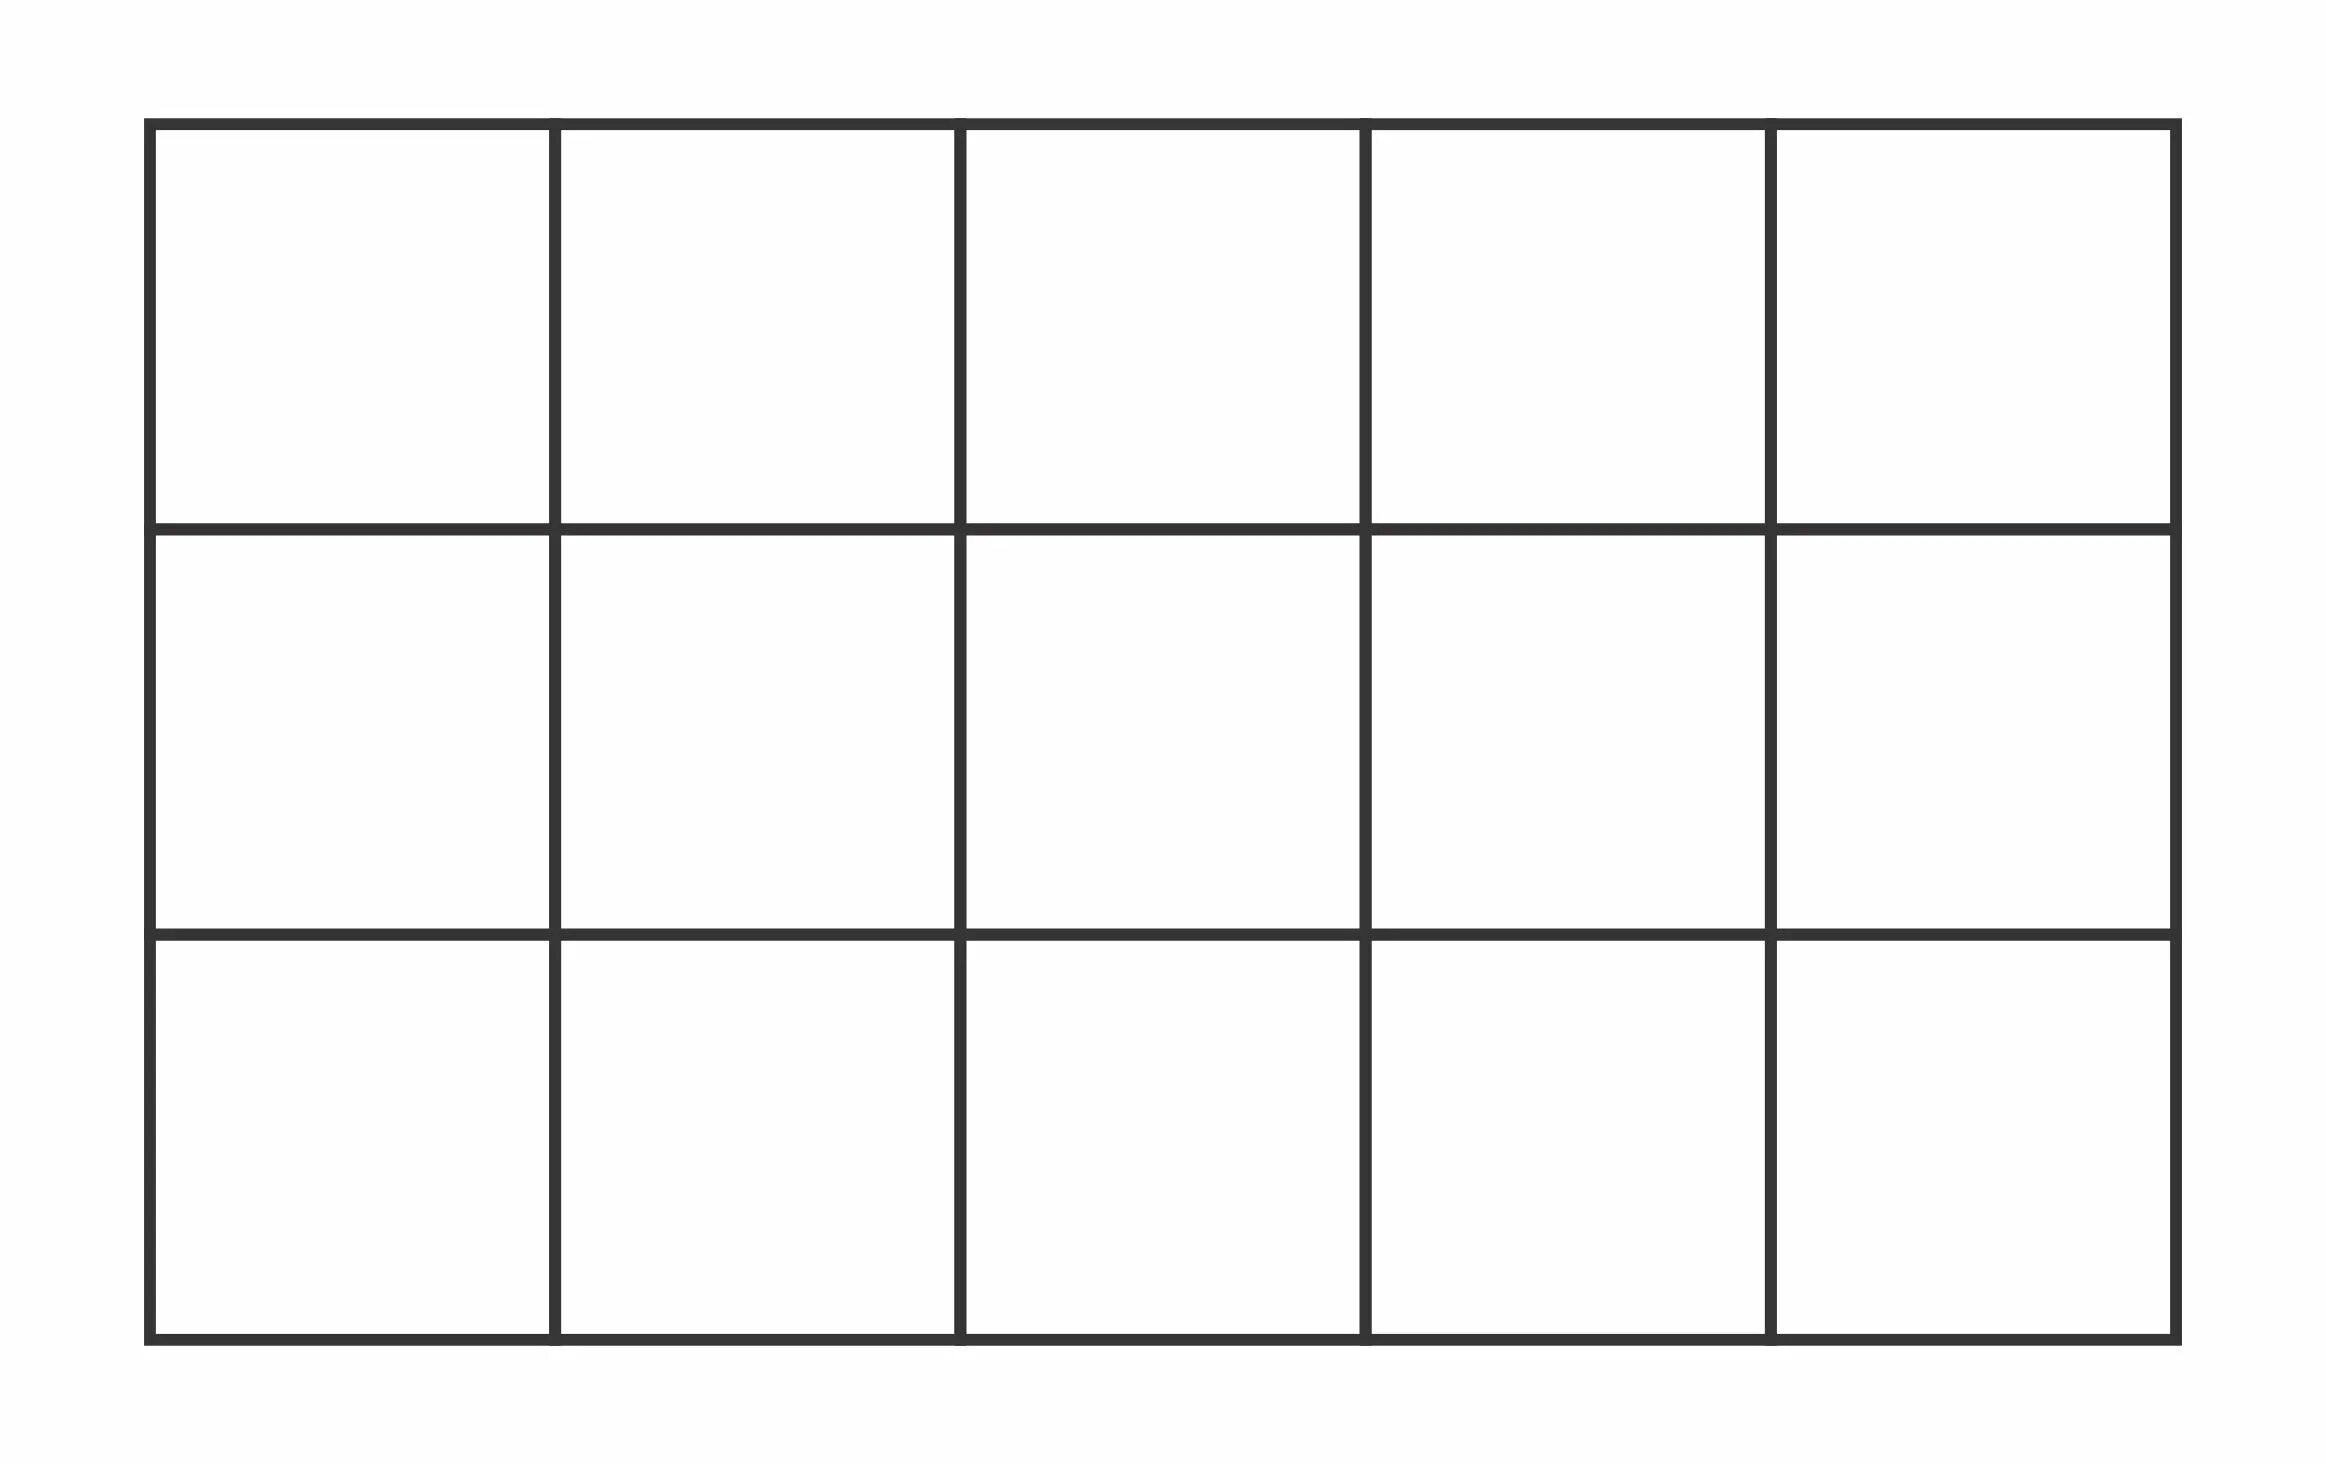 Лист а4 расчерченный на квадраты. Разметка листа на квадраты. Прямоугольник в клеточку. Квадрат и прямоугольник на листе.